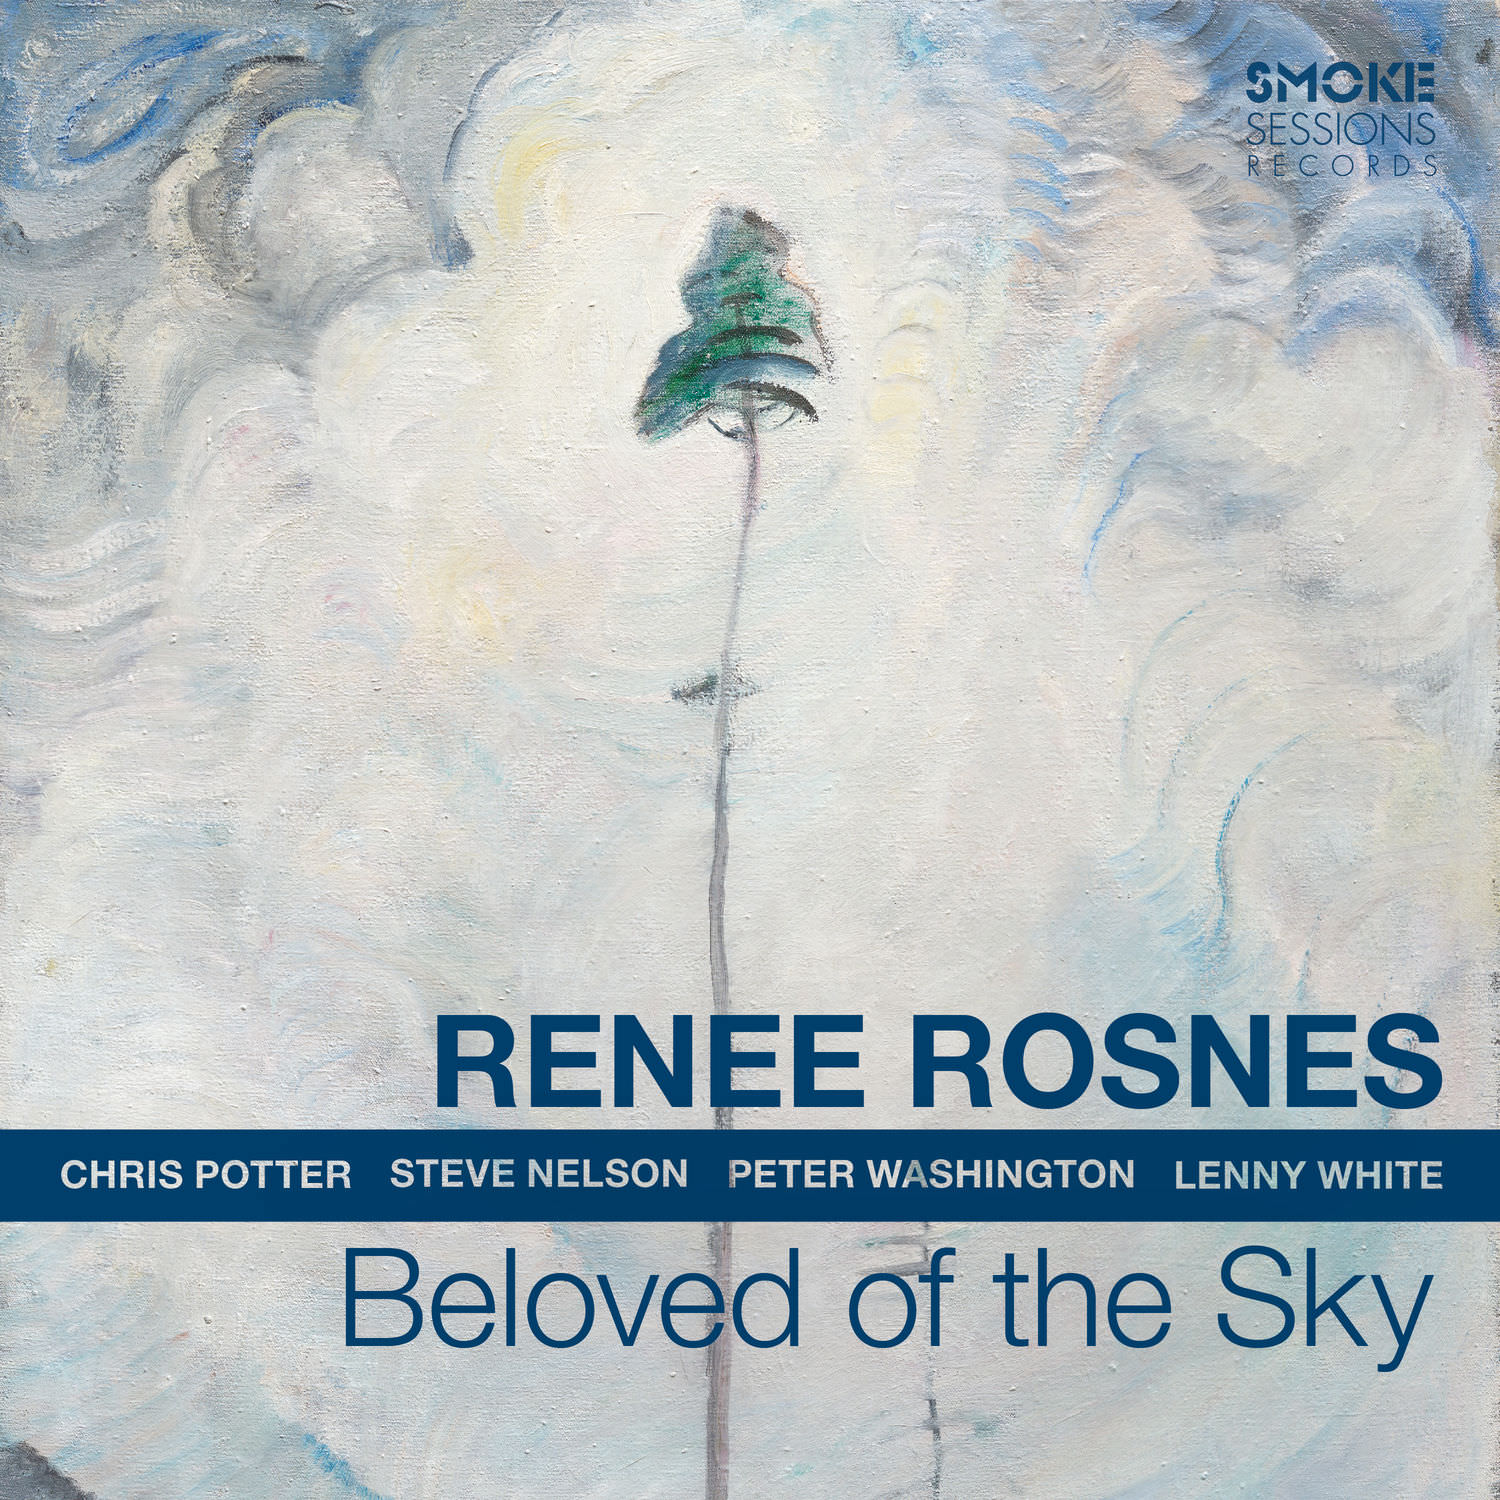 Renee Rosnes - Beloved Of The Sky (2018) [FLAC 24bit/96kHz]